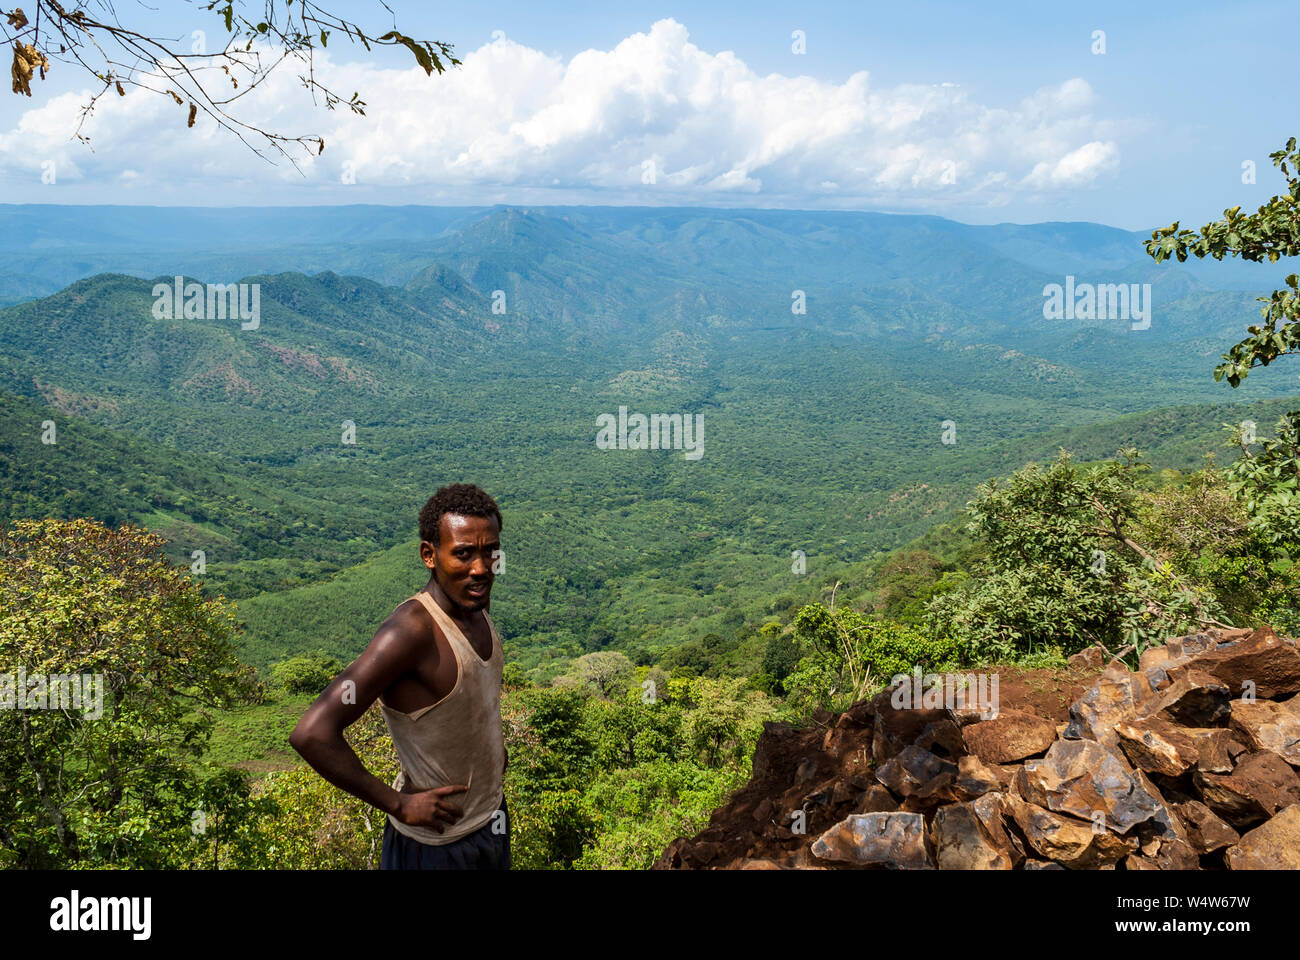 El hombre etíope está en acantilado cerca de Bure , Illubabor, Etiopía, con bosques de tierras bajas paisaje en segundo plano. Foto de stock